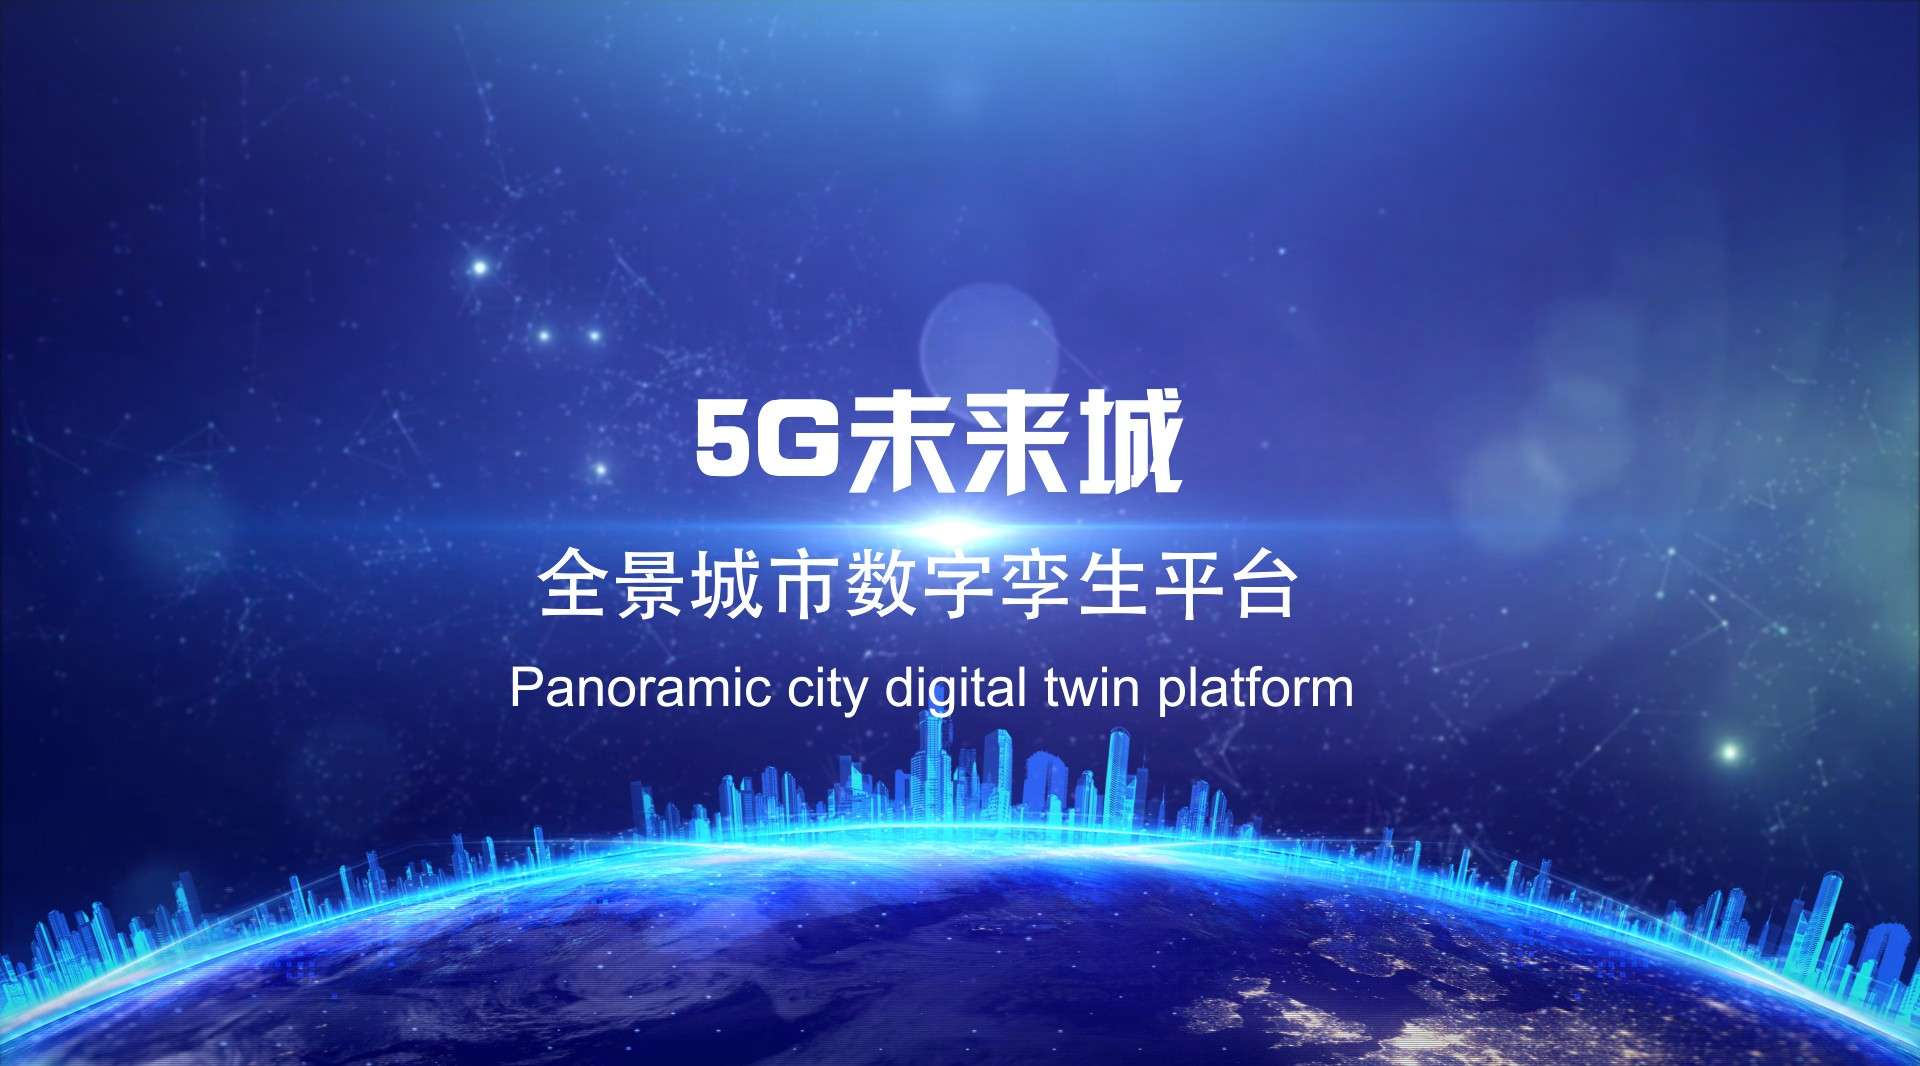 5G未来城_全景城市数字孪生平台宣传片